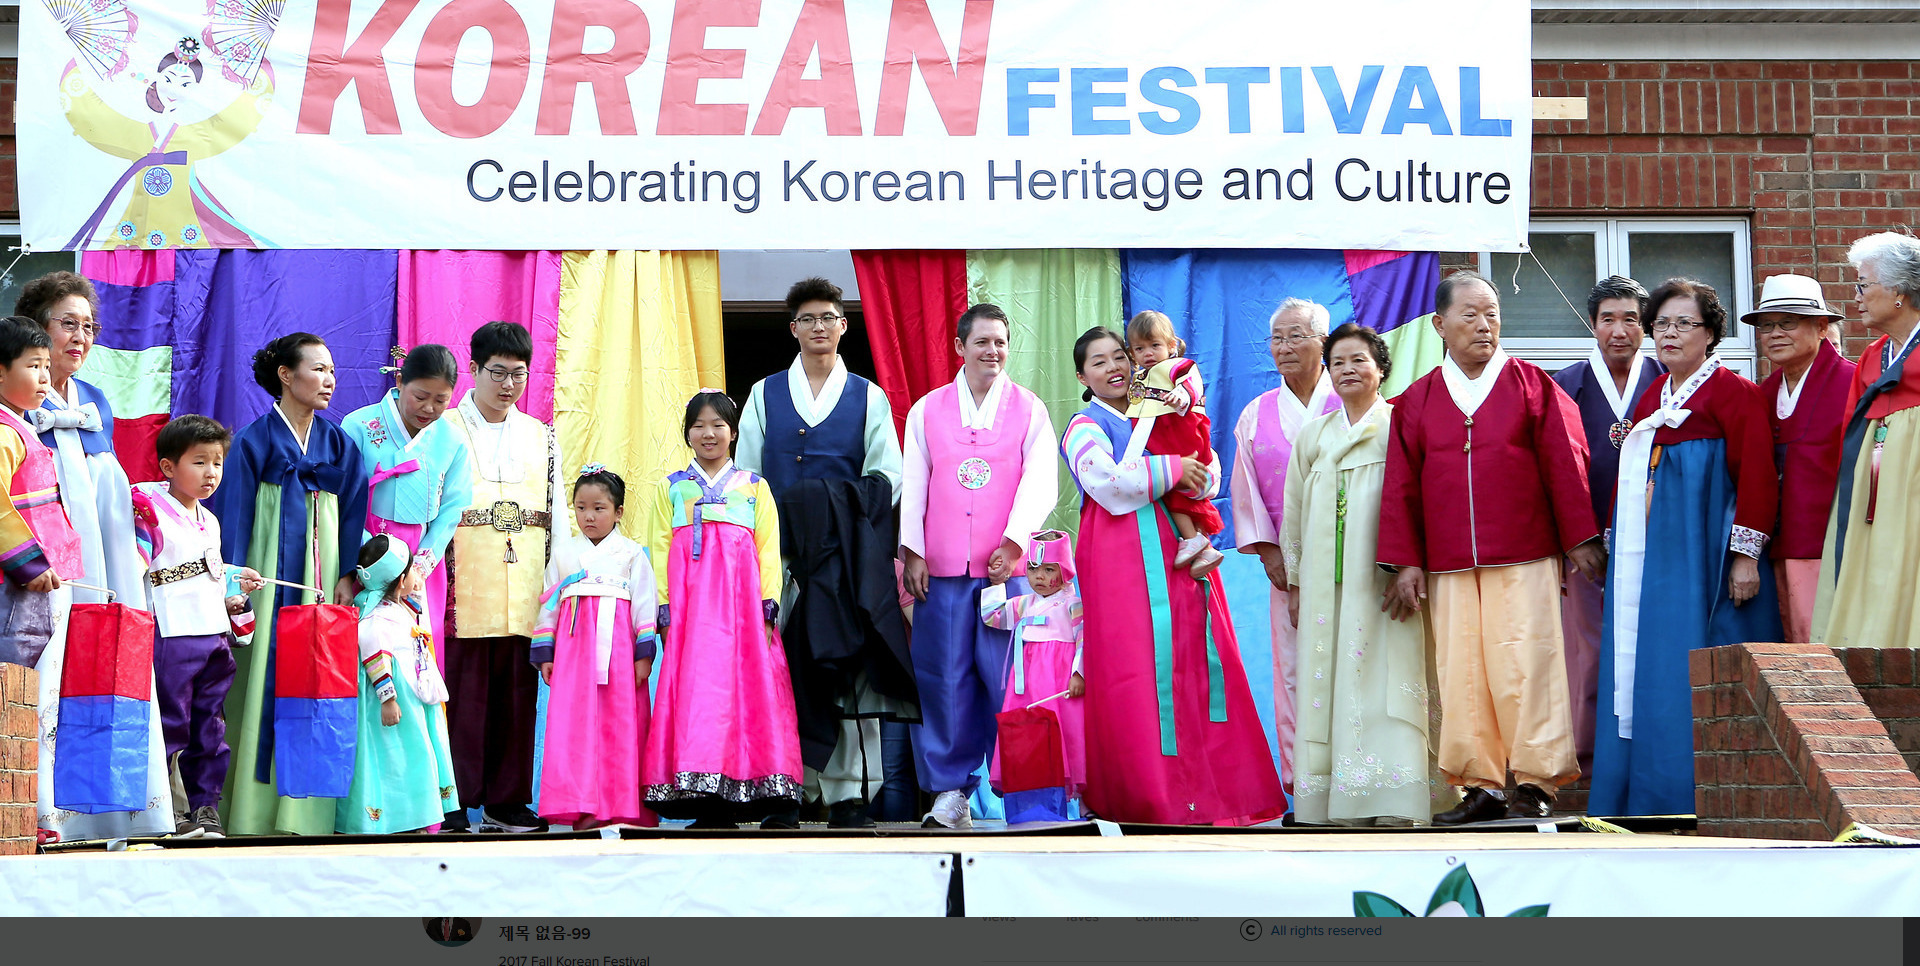 Korean Festival, Columbia, South Carolina, United States